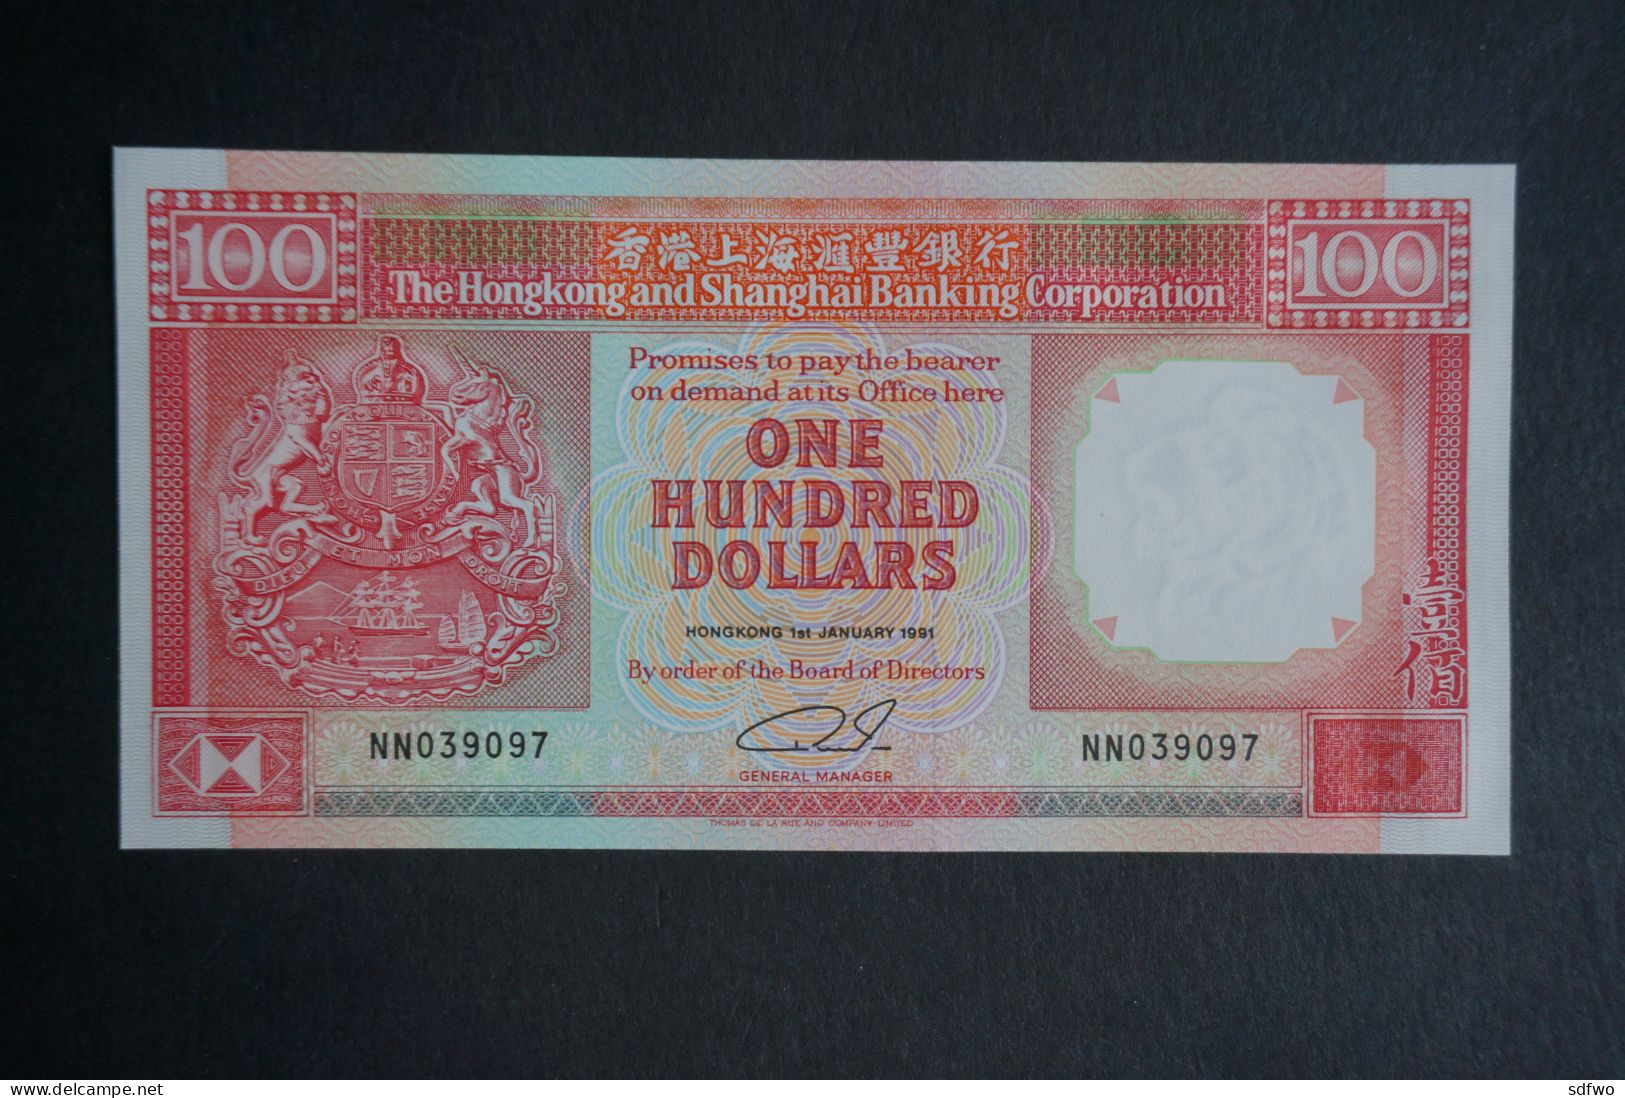 (Tv) 1991 HONG KONG OLD ISSUE - HSBC 100 DOLLARS ($100) Serial No. NN039097 (UNC) - Hong Kong